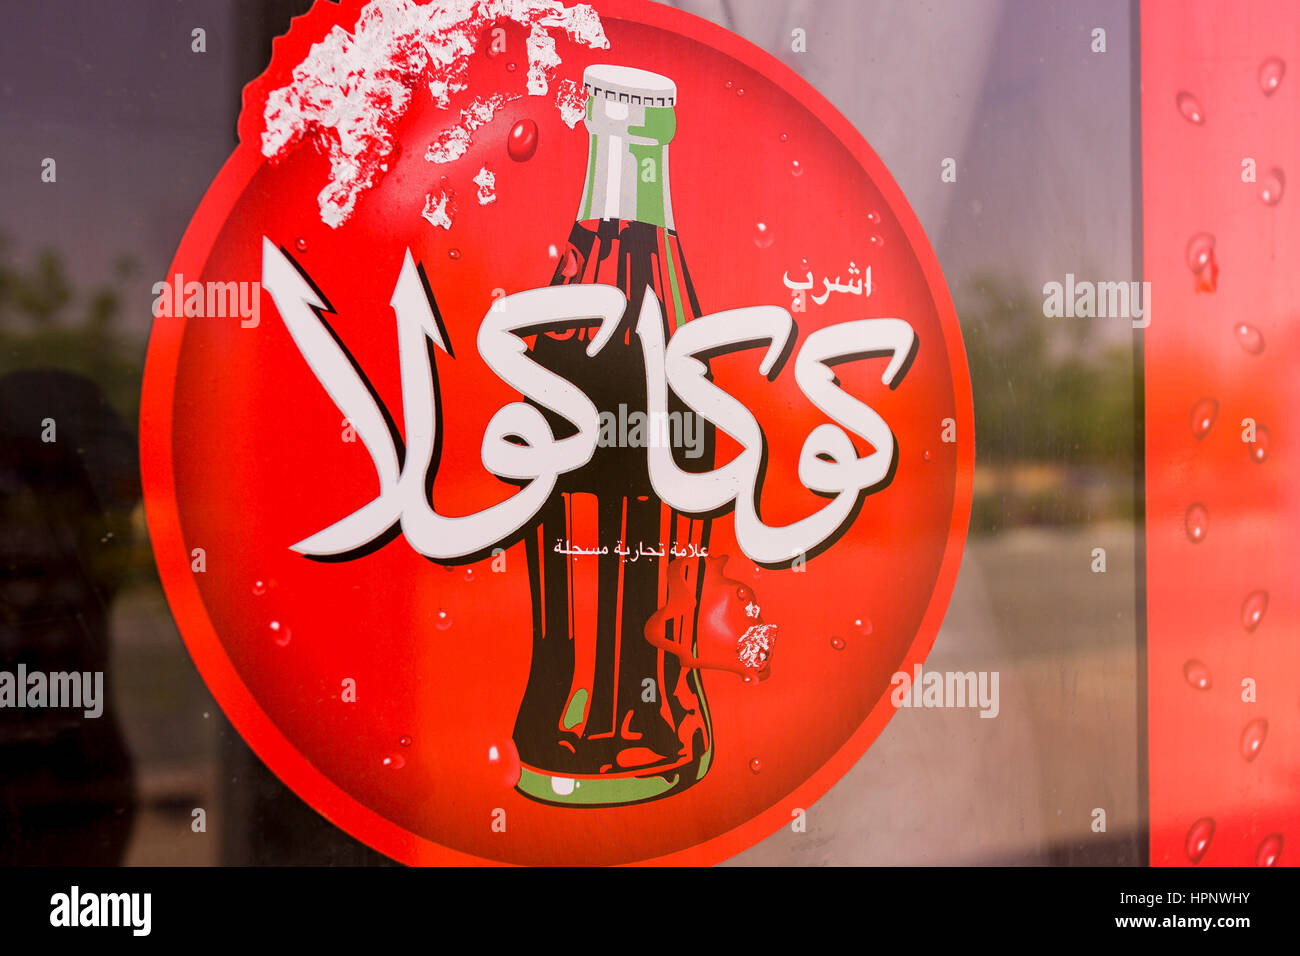 AL AIN, Vereinigte Arabische Emirate - rot Coca-cola Schild in Arabisch, zeigt Flasche Cola. Stockfoto